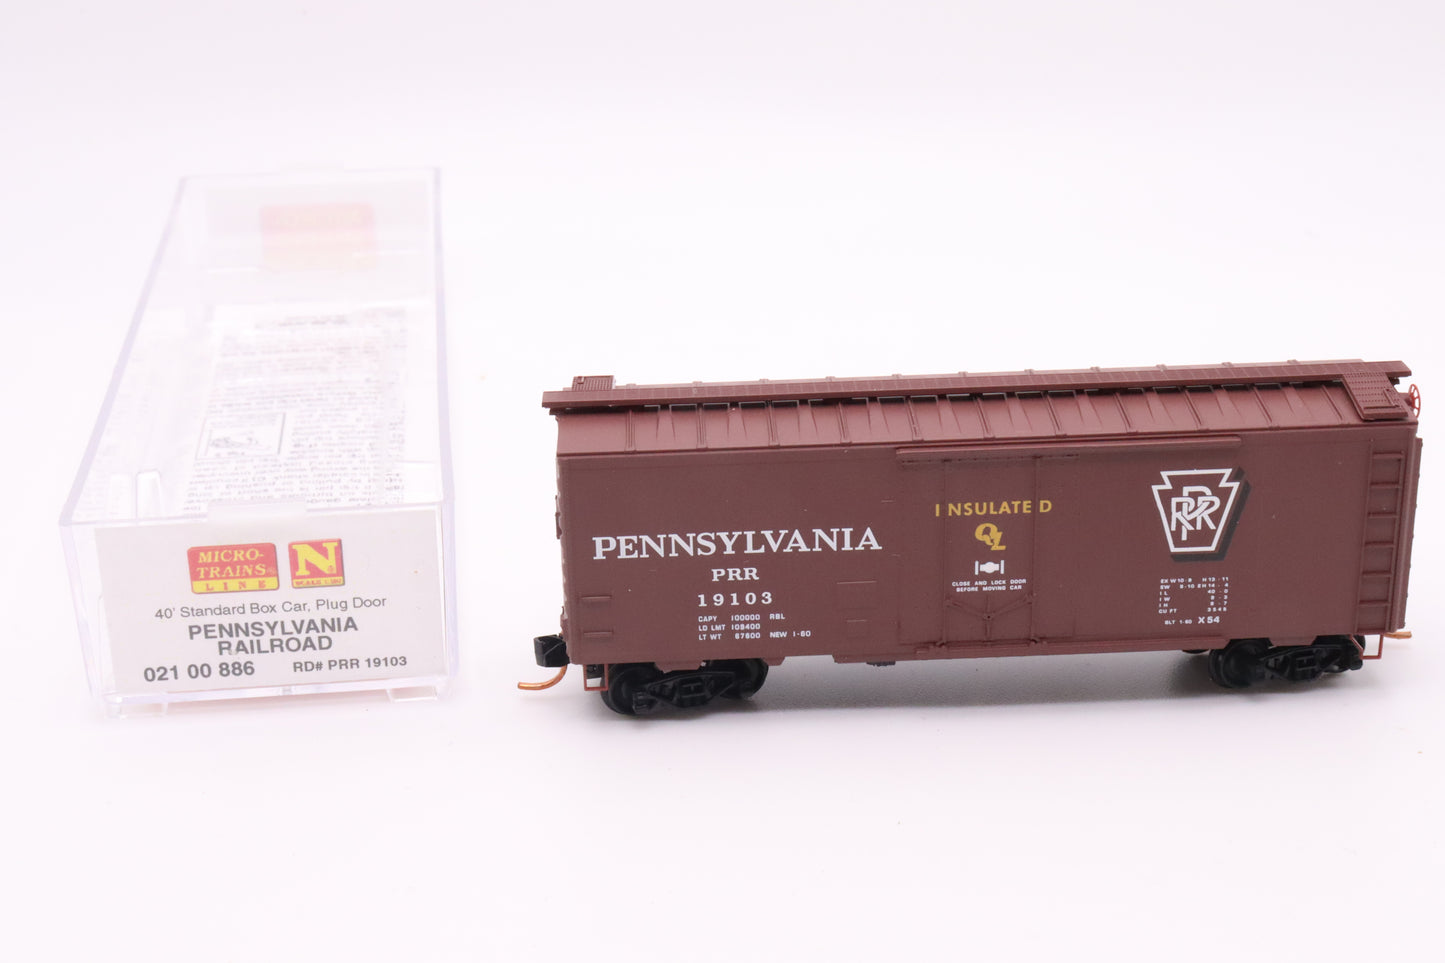 MTL-021 00 886 - 40' Standard Box Car, Plug Door - Pennsylvania Railroad - PRR #19103